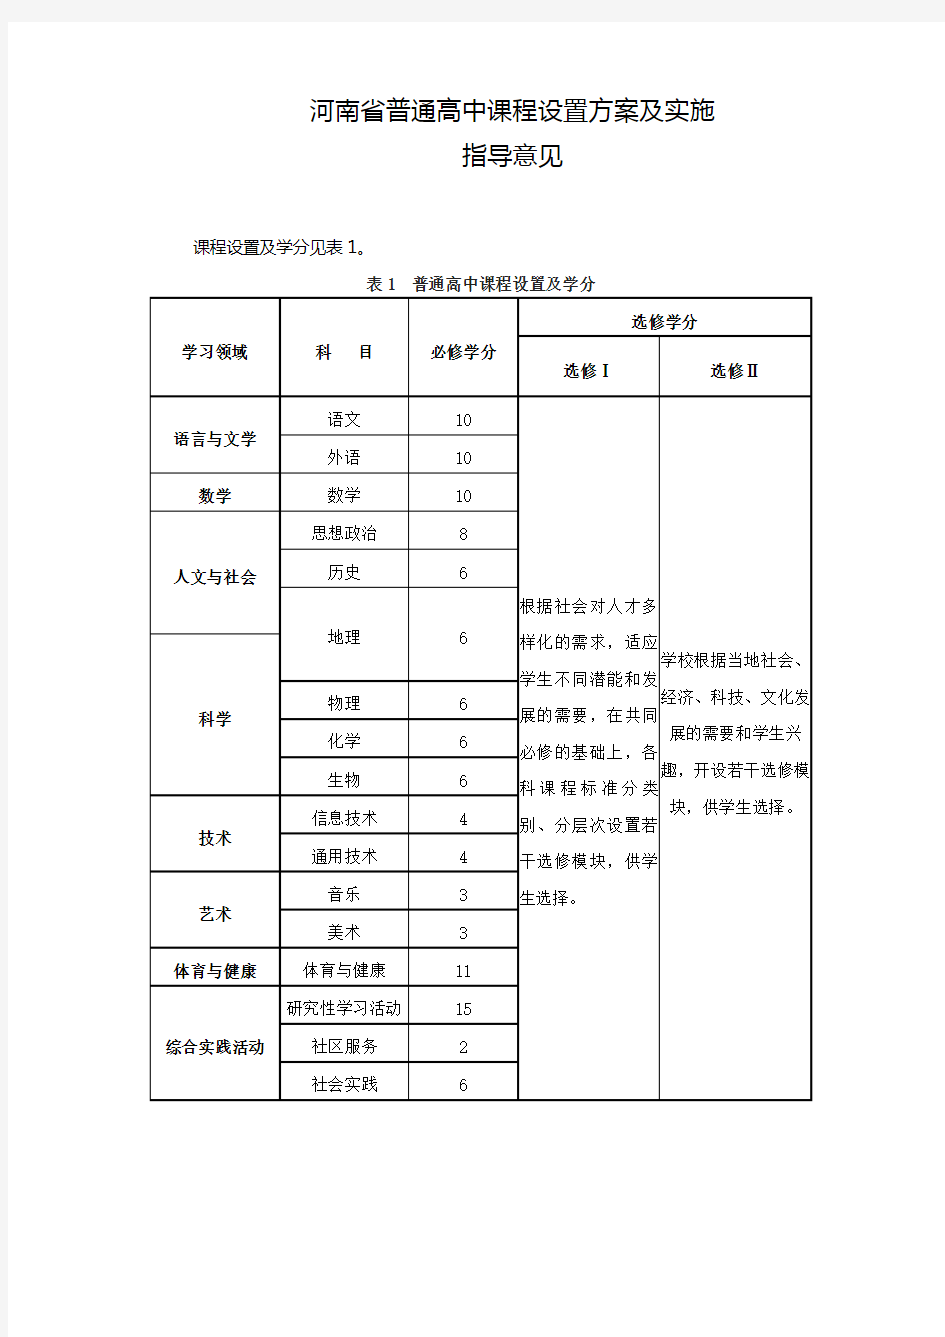 河南省普通高中课程设置方案及实施(详细表)